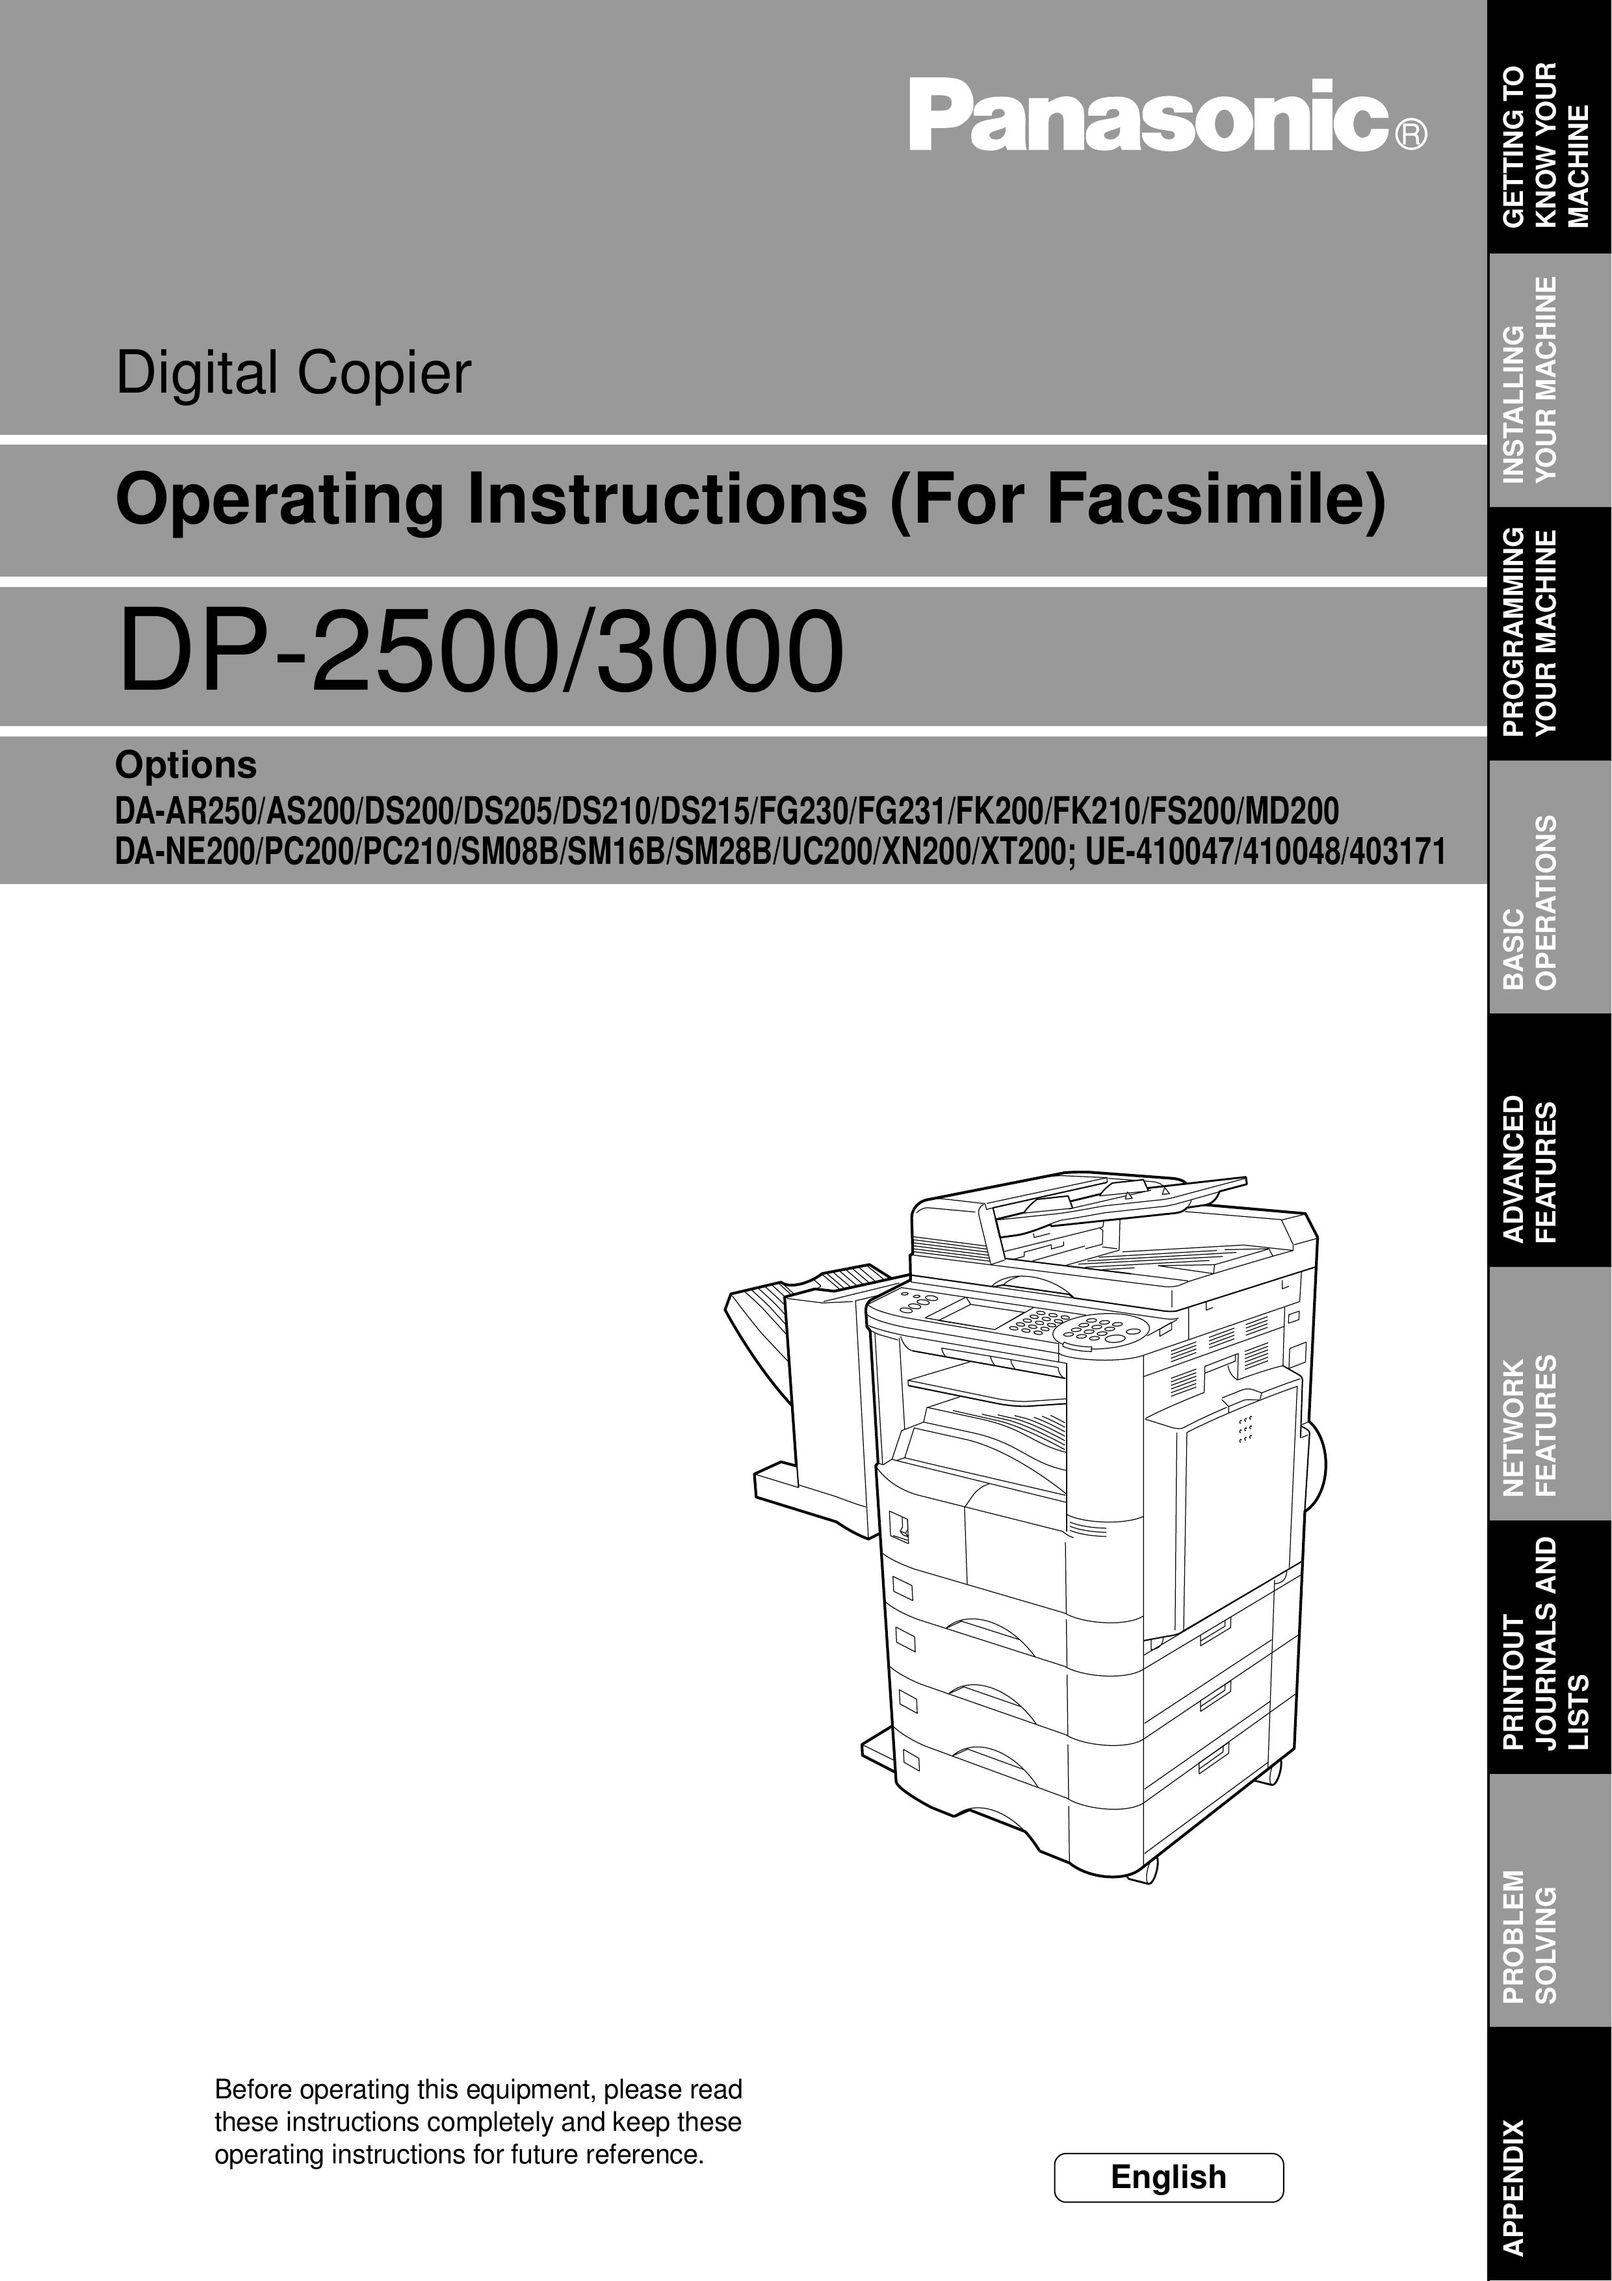 Panasonic DP-2500 All in One Printer User Manual